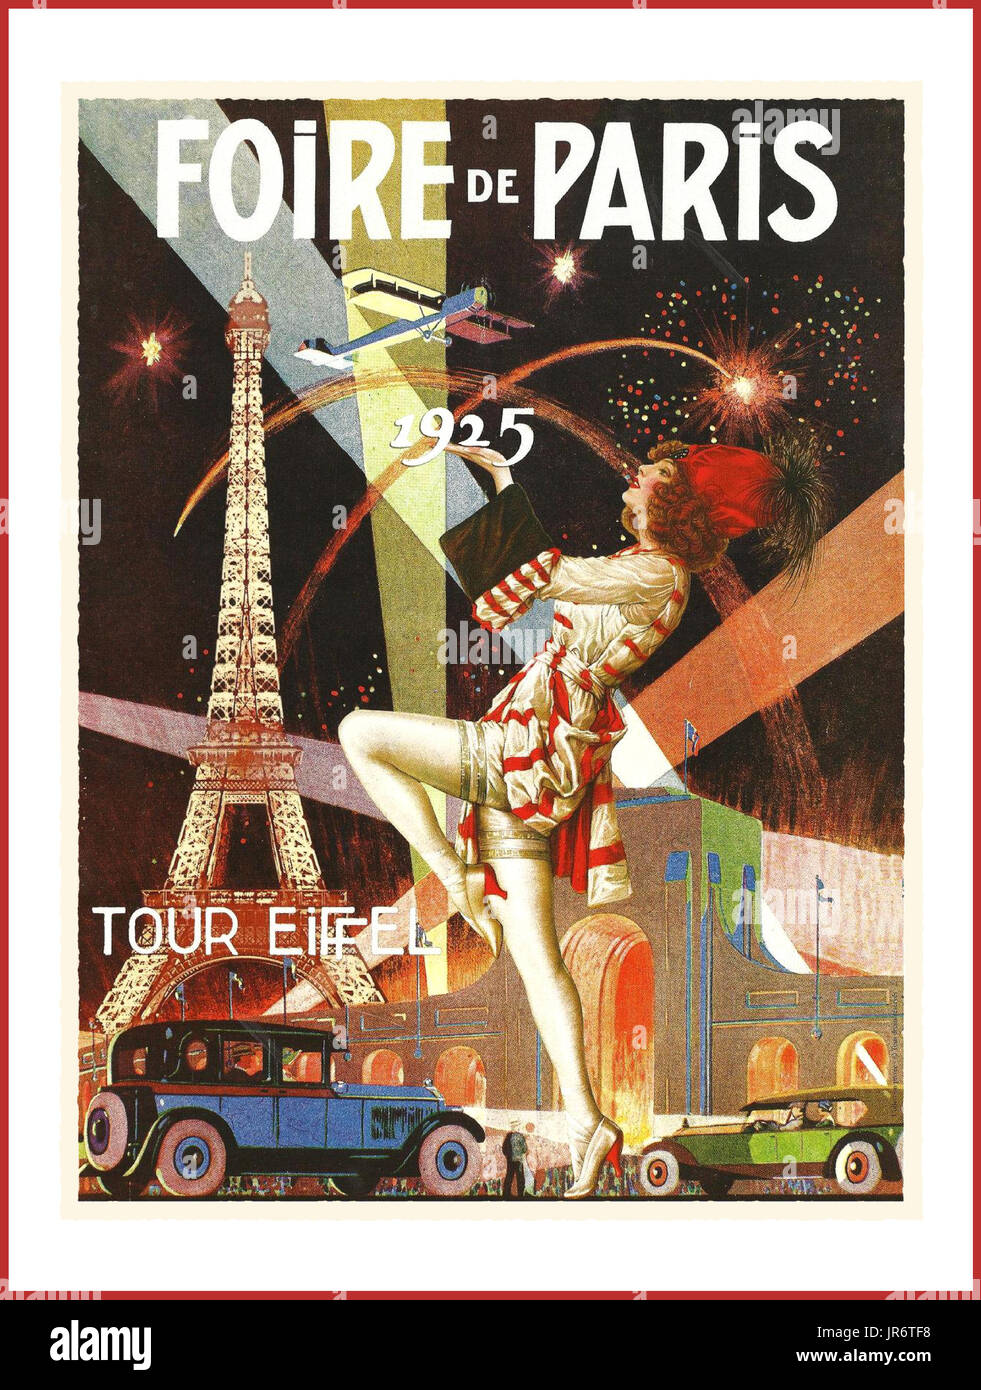 VINTAGE vintage francés PÓSTER DE PARÍS viajes de impresión de póster art deco de la década de 1920, la Feria de París publicidad.' Foire de Paris'' 1925 Foto de stock